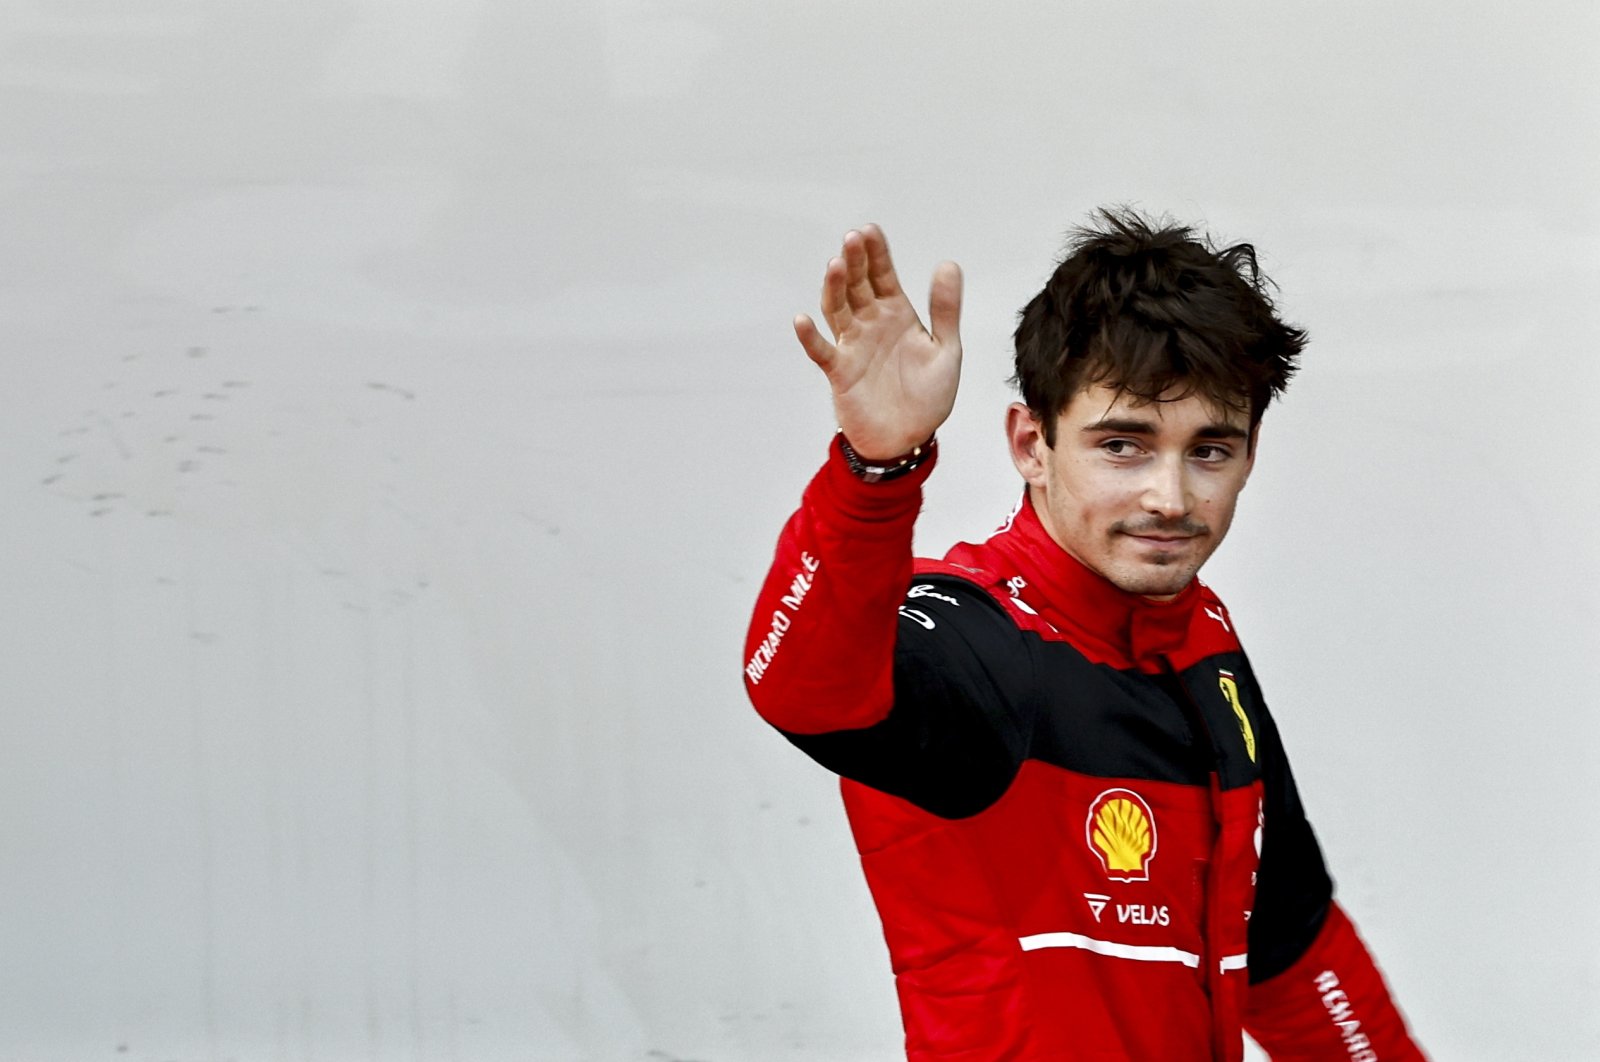 Perjalanan bergelombang ke depan untuk Leclerc, Ferrari di Grand Prix Kanada